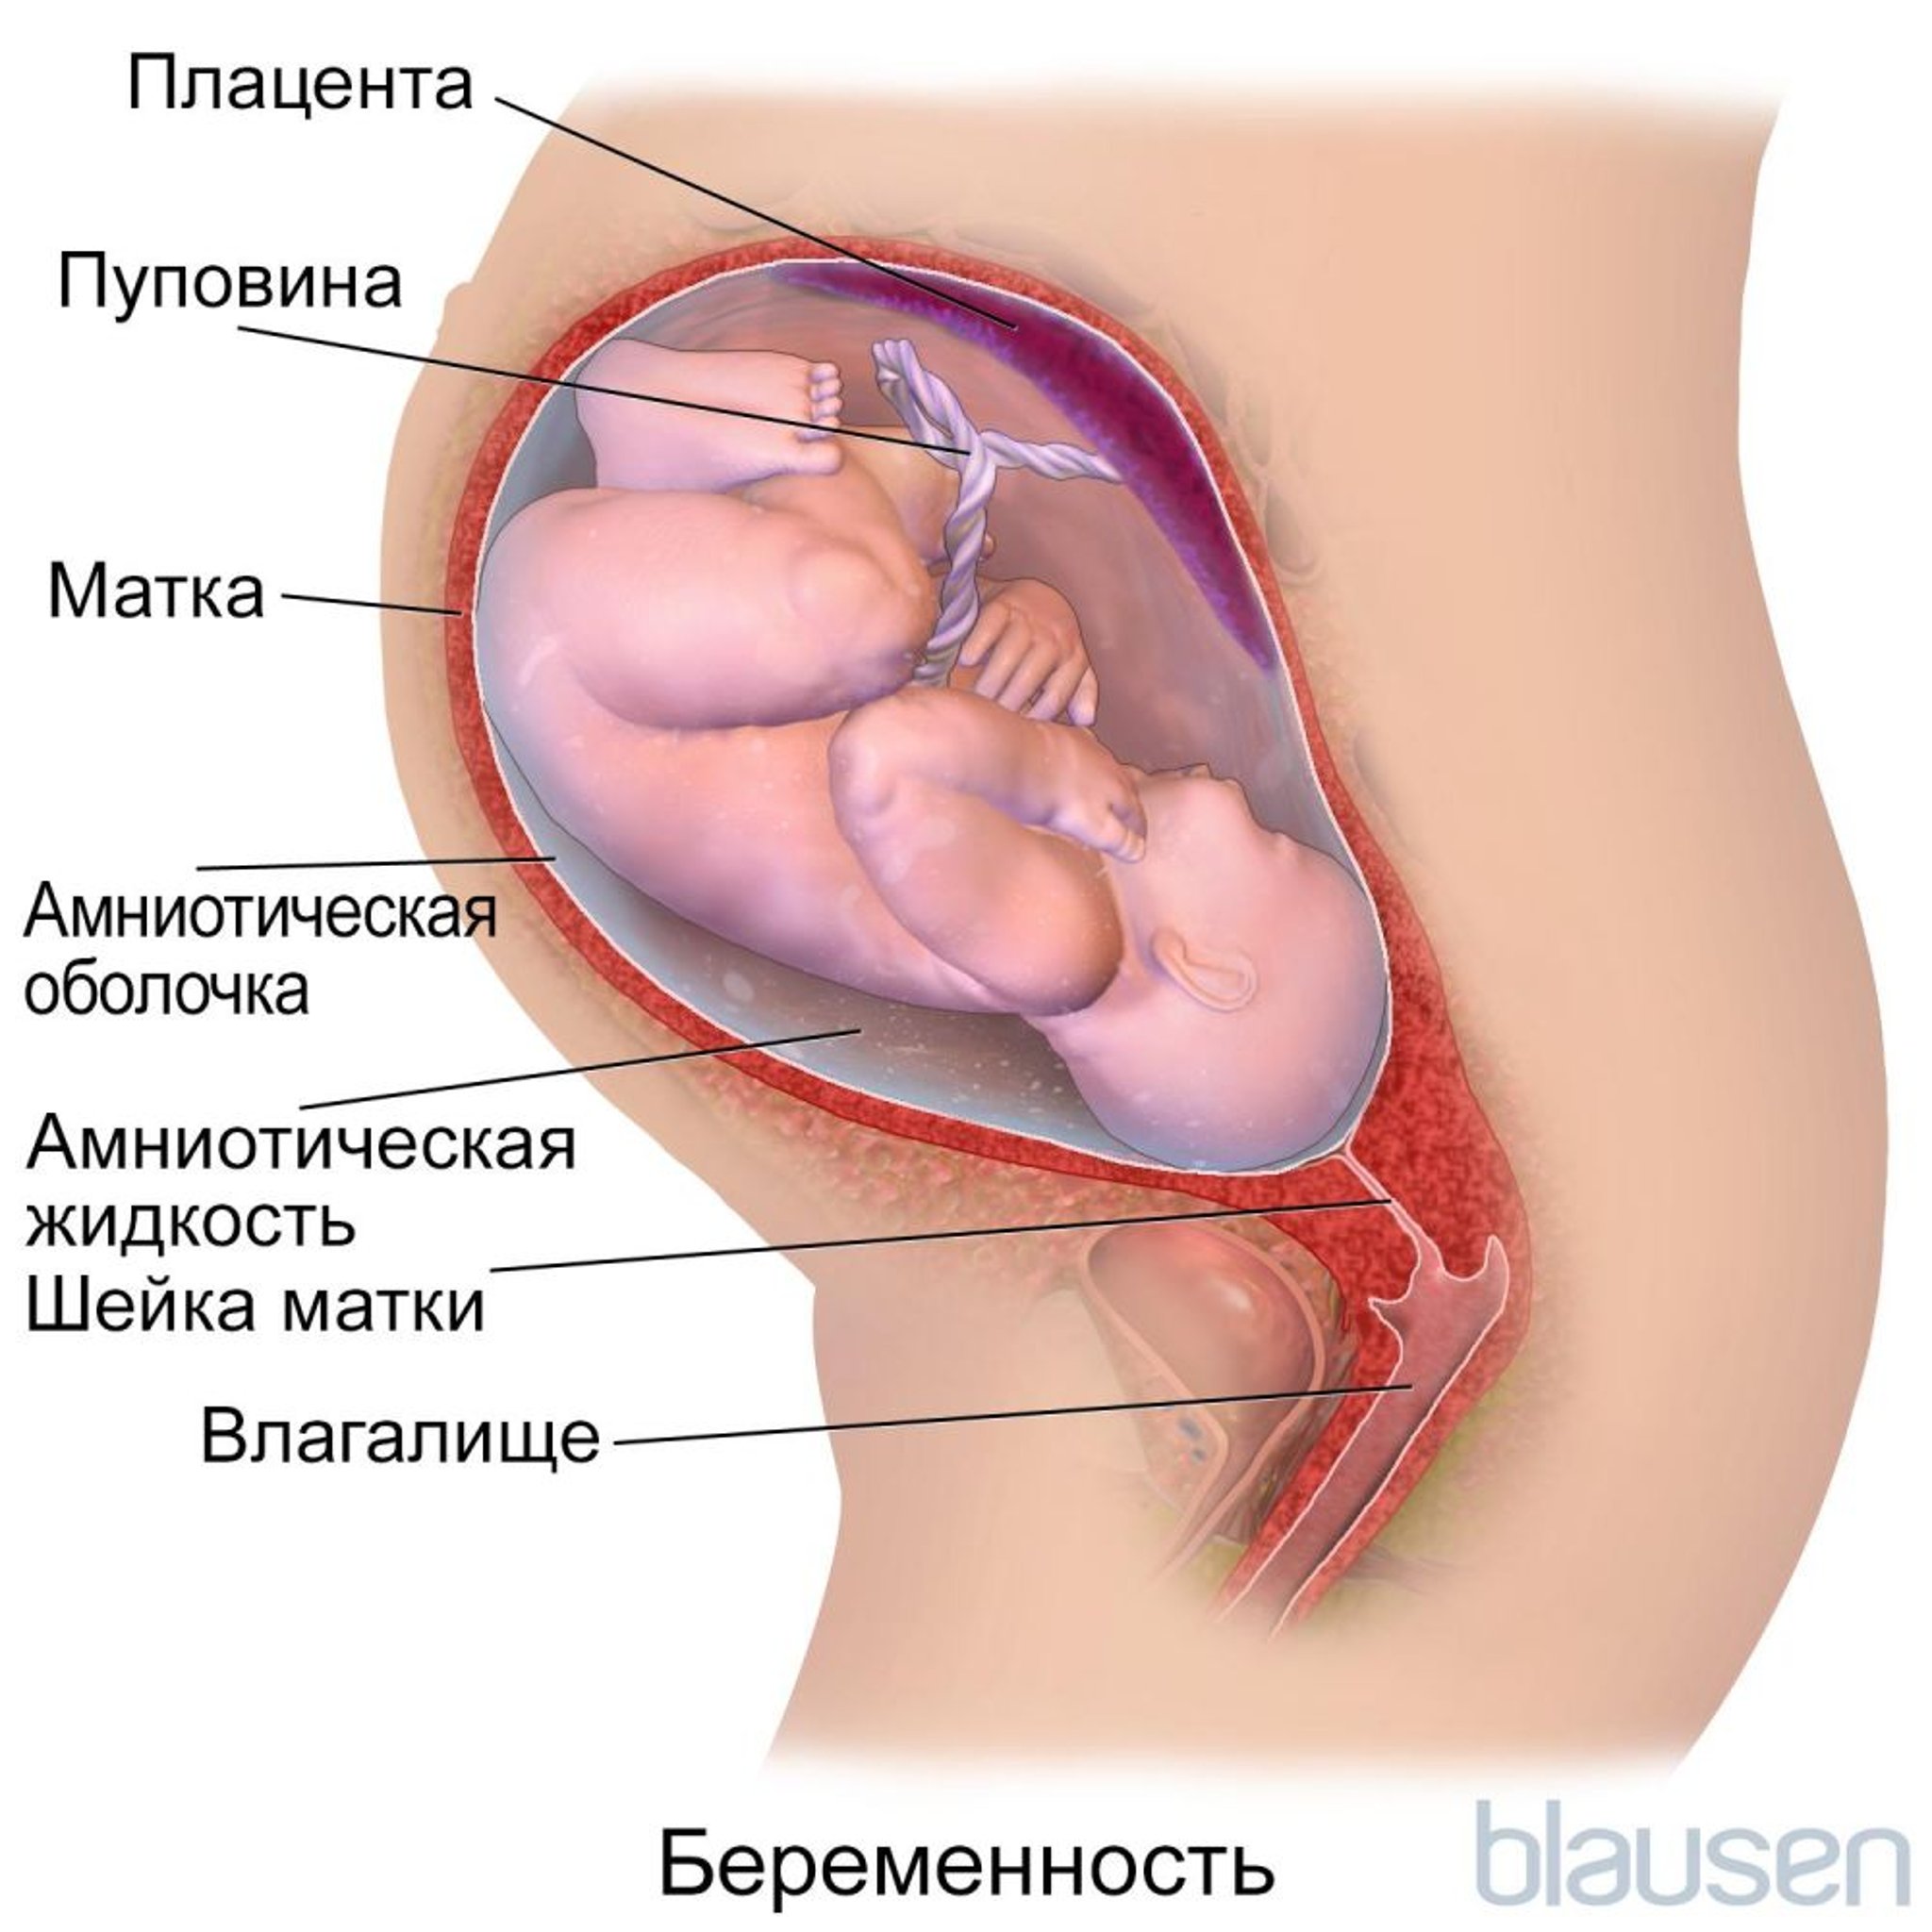 Беременность